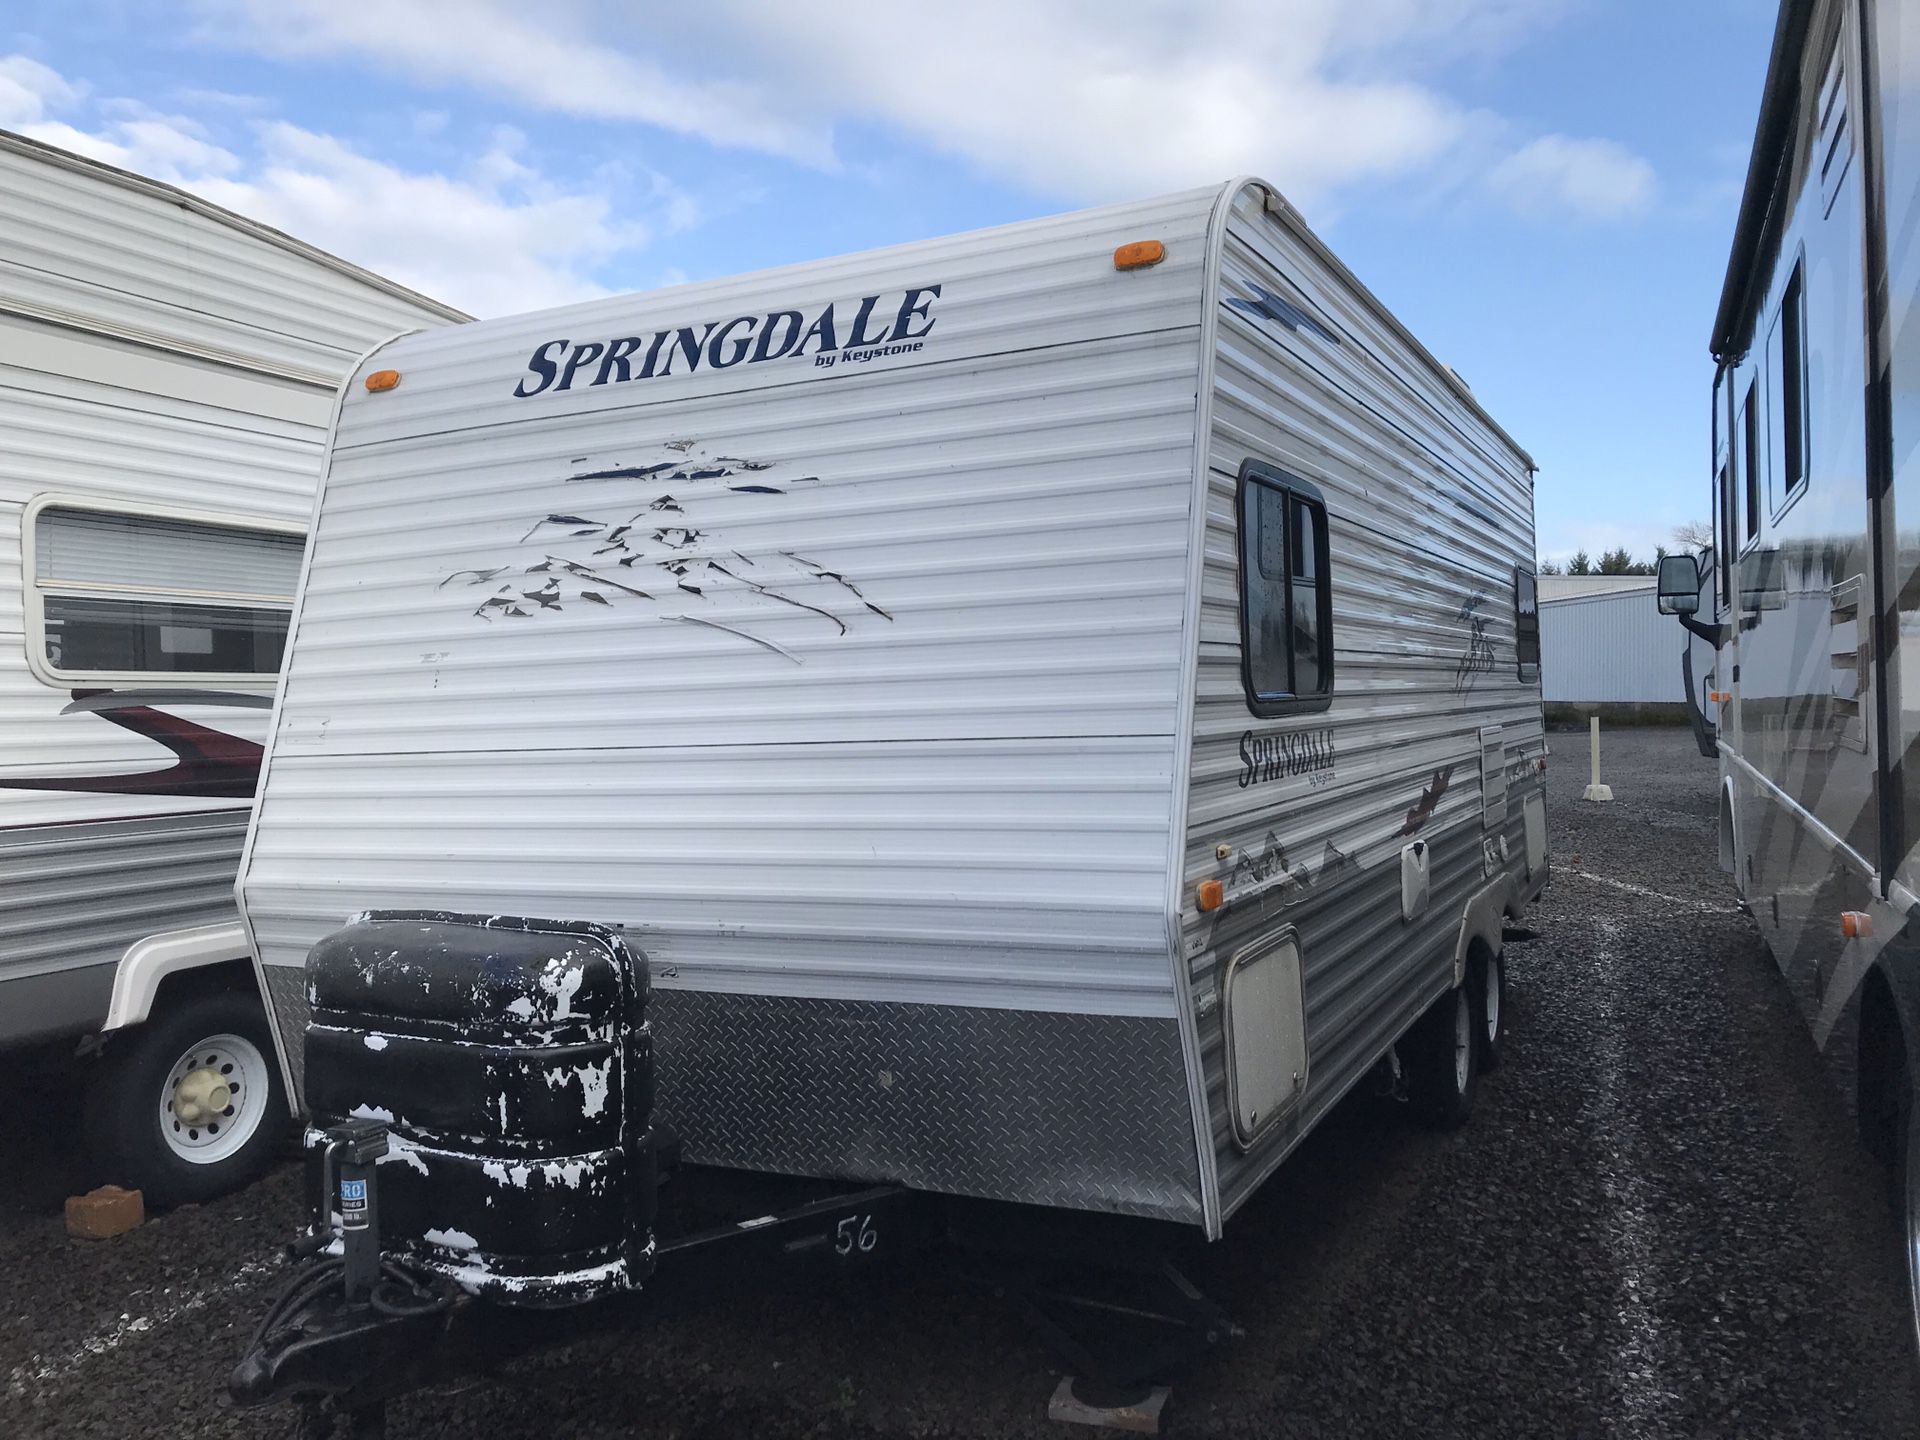 !!!!!!Springdale 23 ft camper !/!/!/!